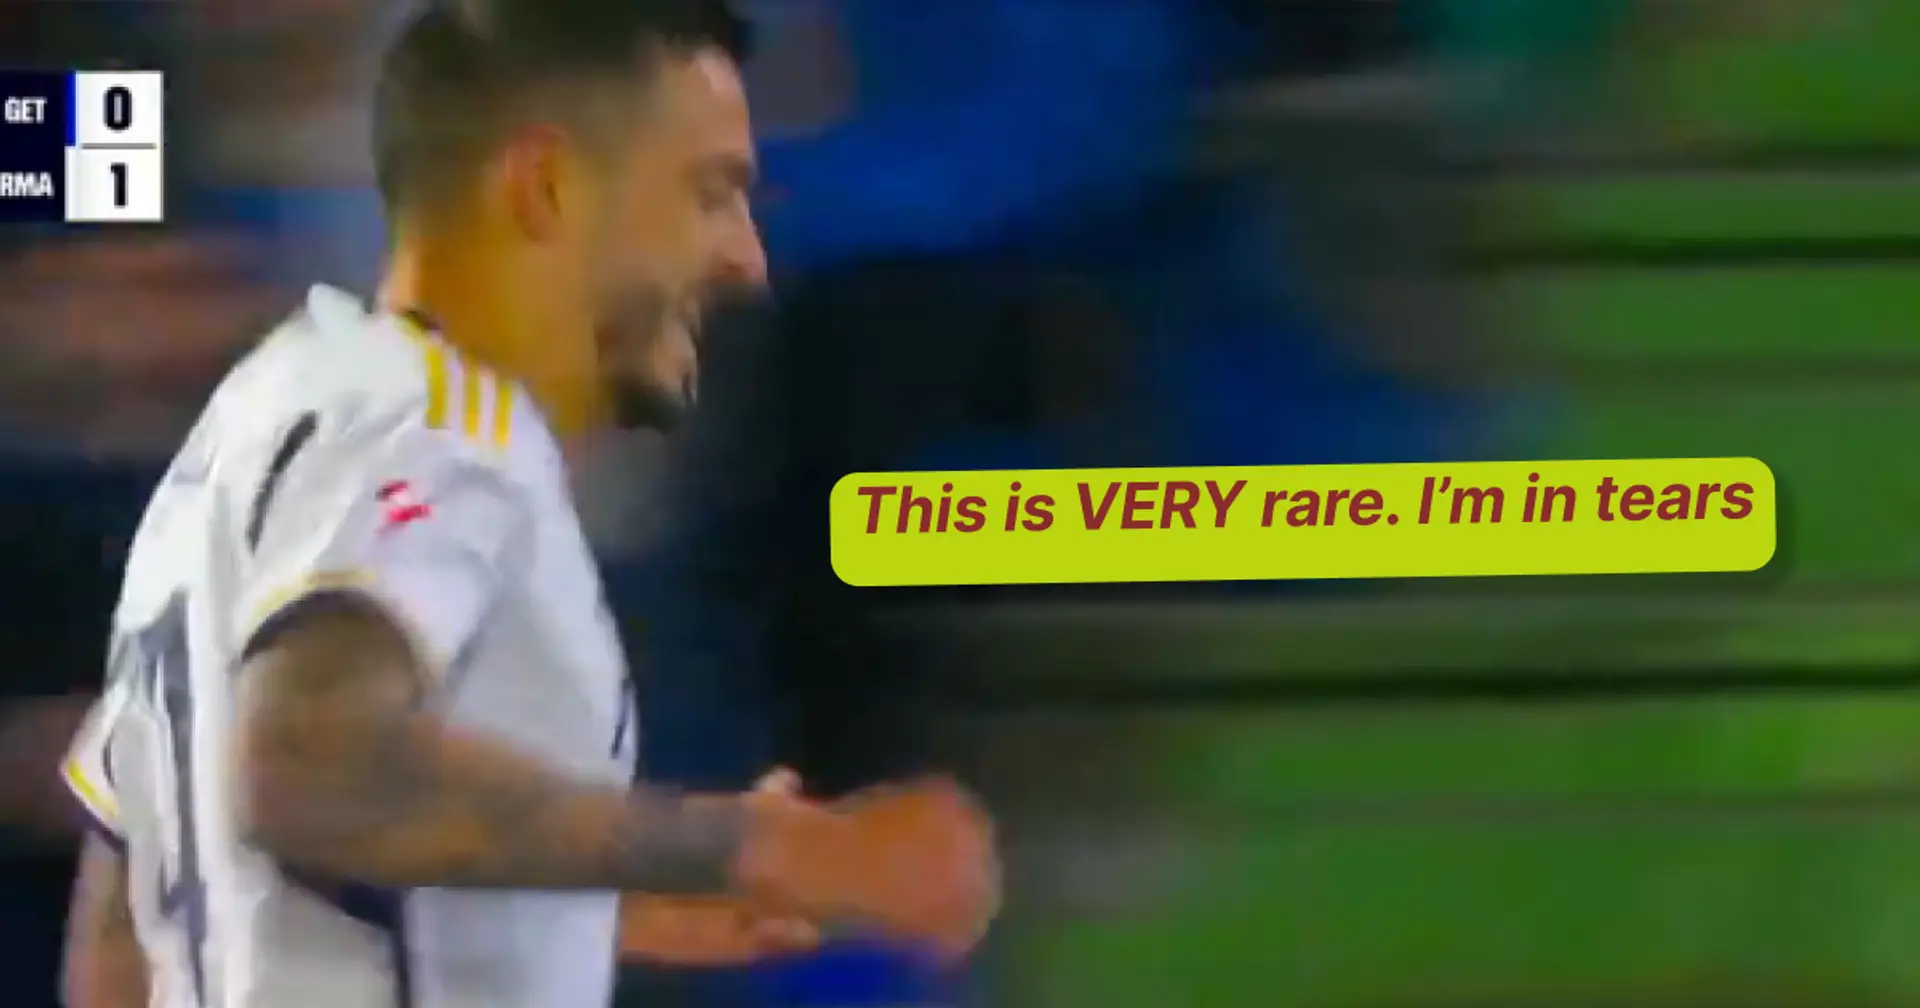 'La primera vez que lo veo': Los fans están sorprendidos por la rara calidad de un jugador en el primer gol de Joselu vs Getafe